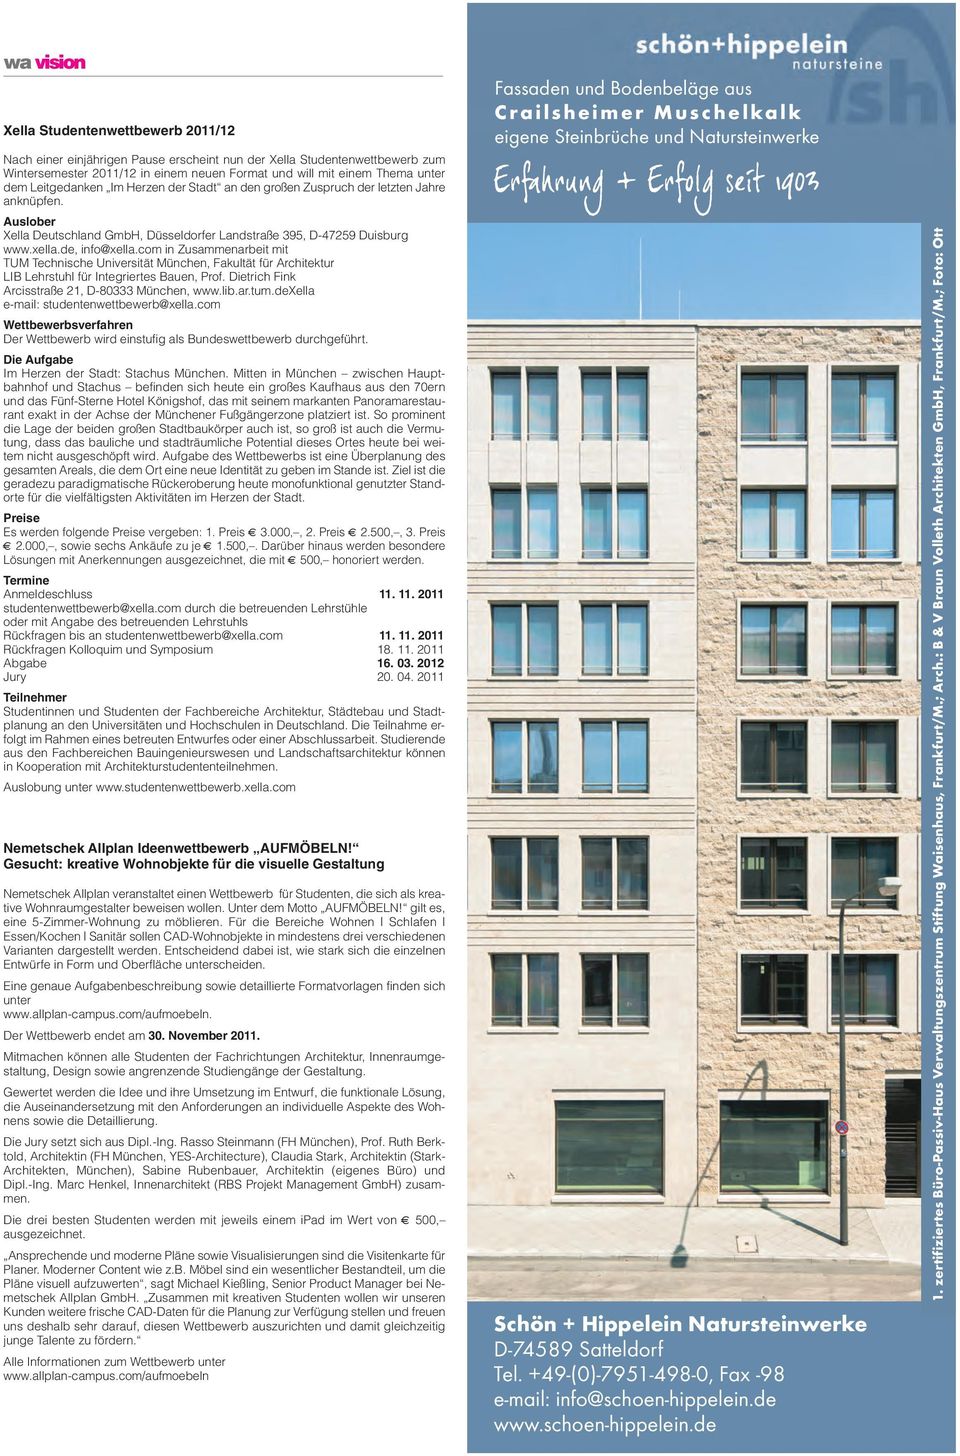 com in Zusammenarbeit mit TUM Technische Universität München, Fakultät für Architektur LIB Lehrstuhl für Integriertes Bauen, Prof. Dietrich Fink Arcisstraße 21, D-80333 München, www.lib.ar.tum.